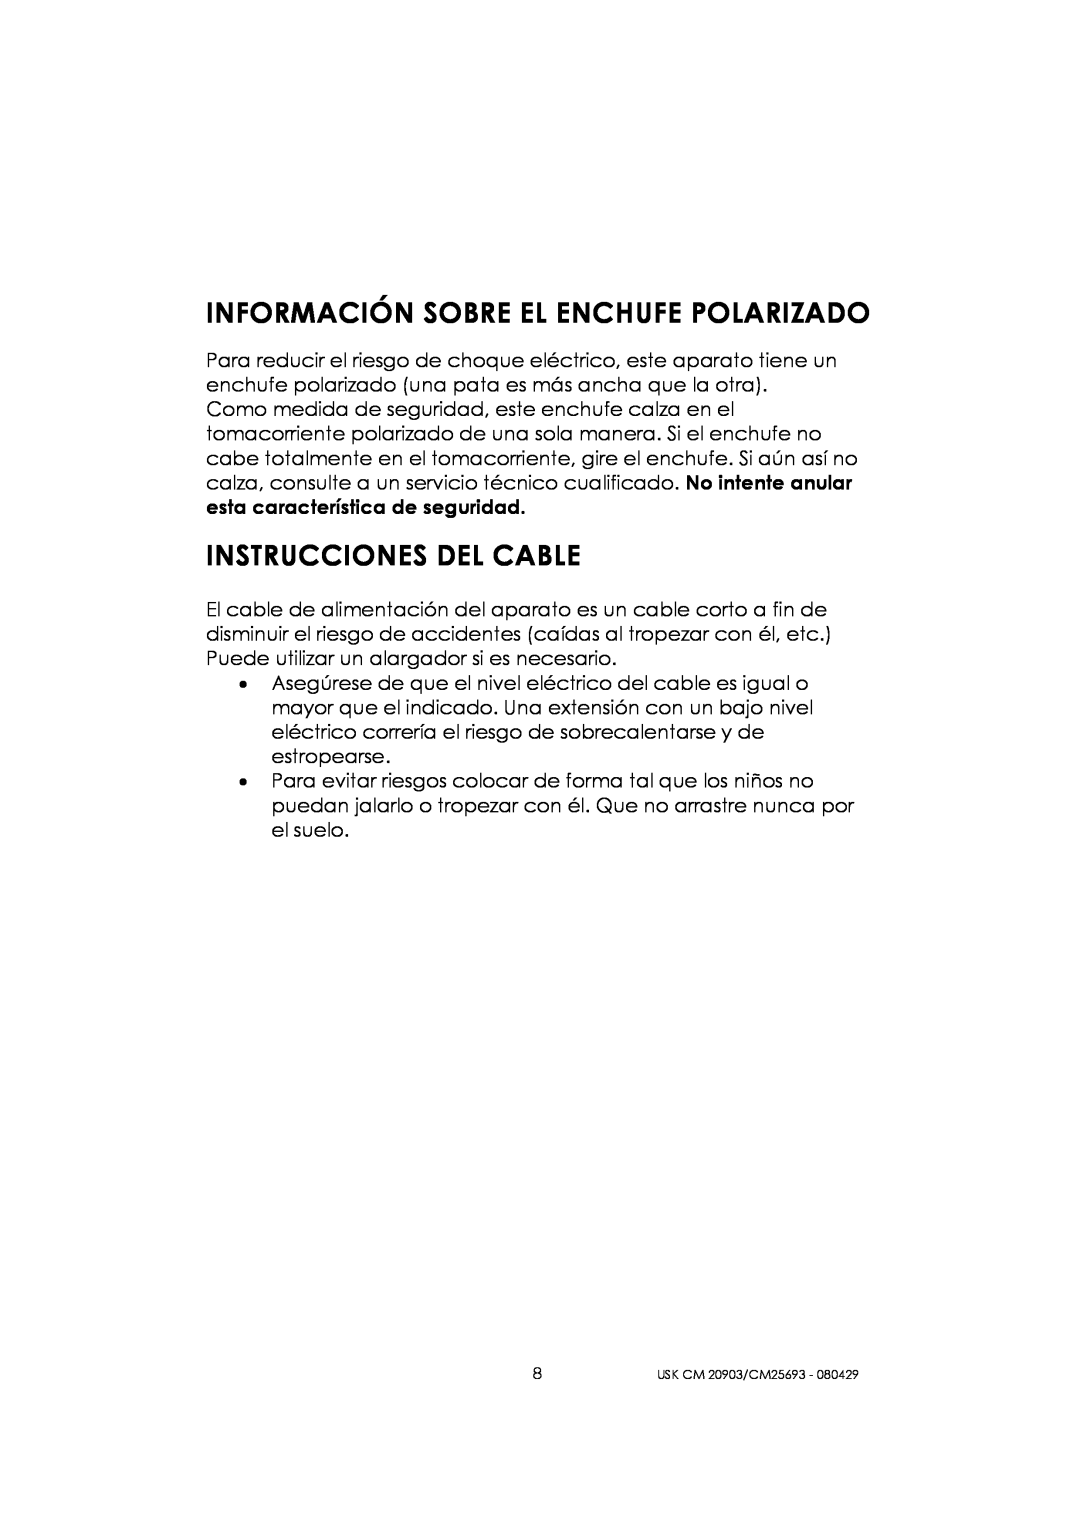 Kalorik CM 25693 manual Información Sobre El Enchufe Polarizado, Instrucciones Del Cable, 8USK CM 20903/CM25693 